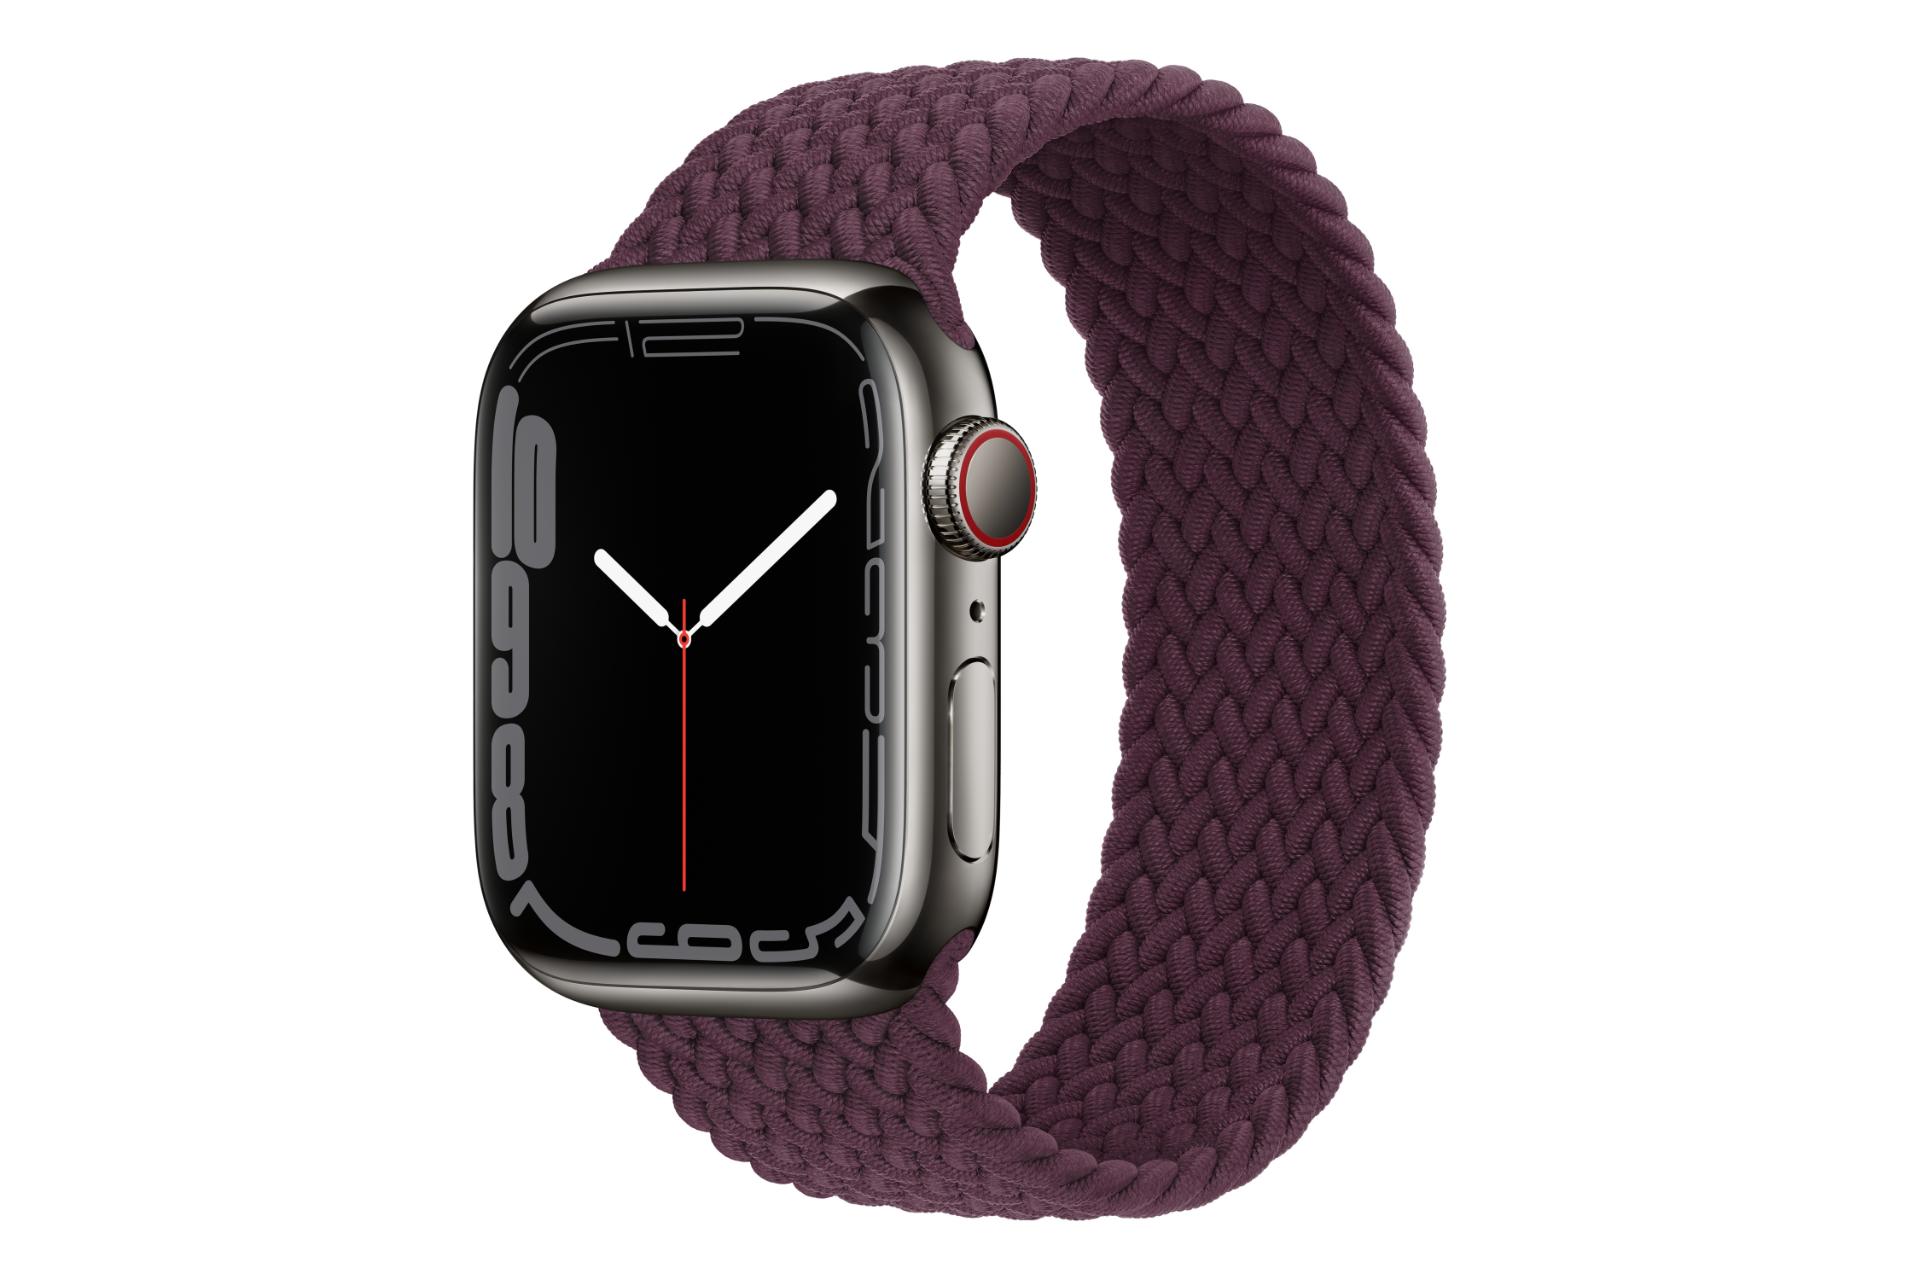 مرجع متخصصين ايران اپل واچ سري 7 استيل / Apple Watch Series 7 Stainless Steel خاكستري